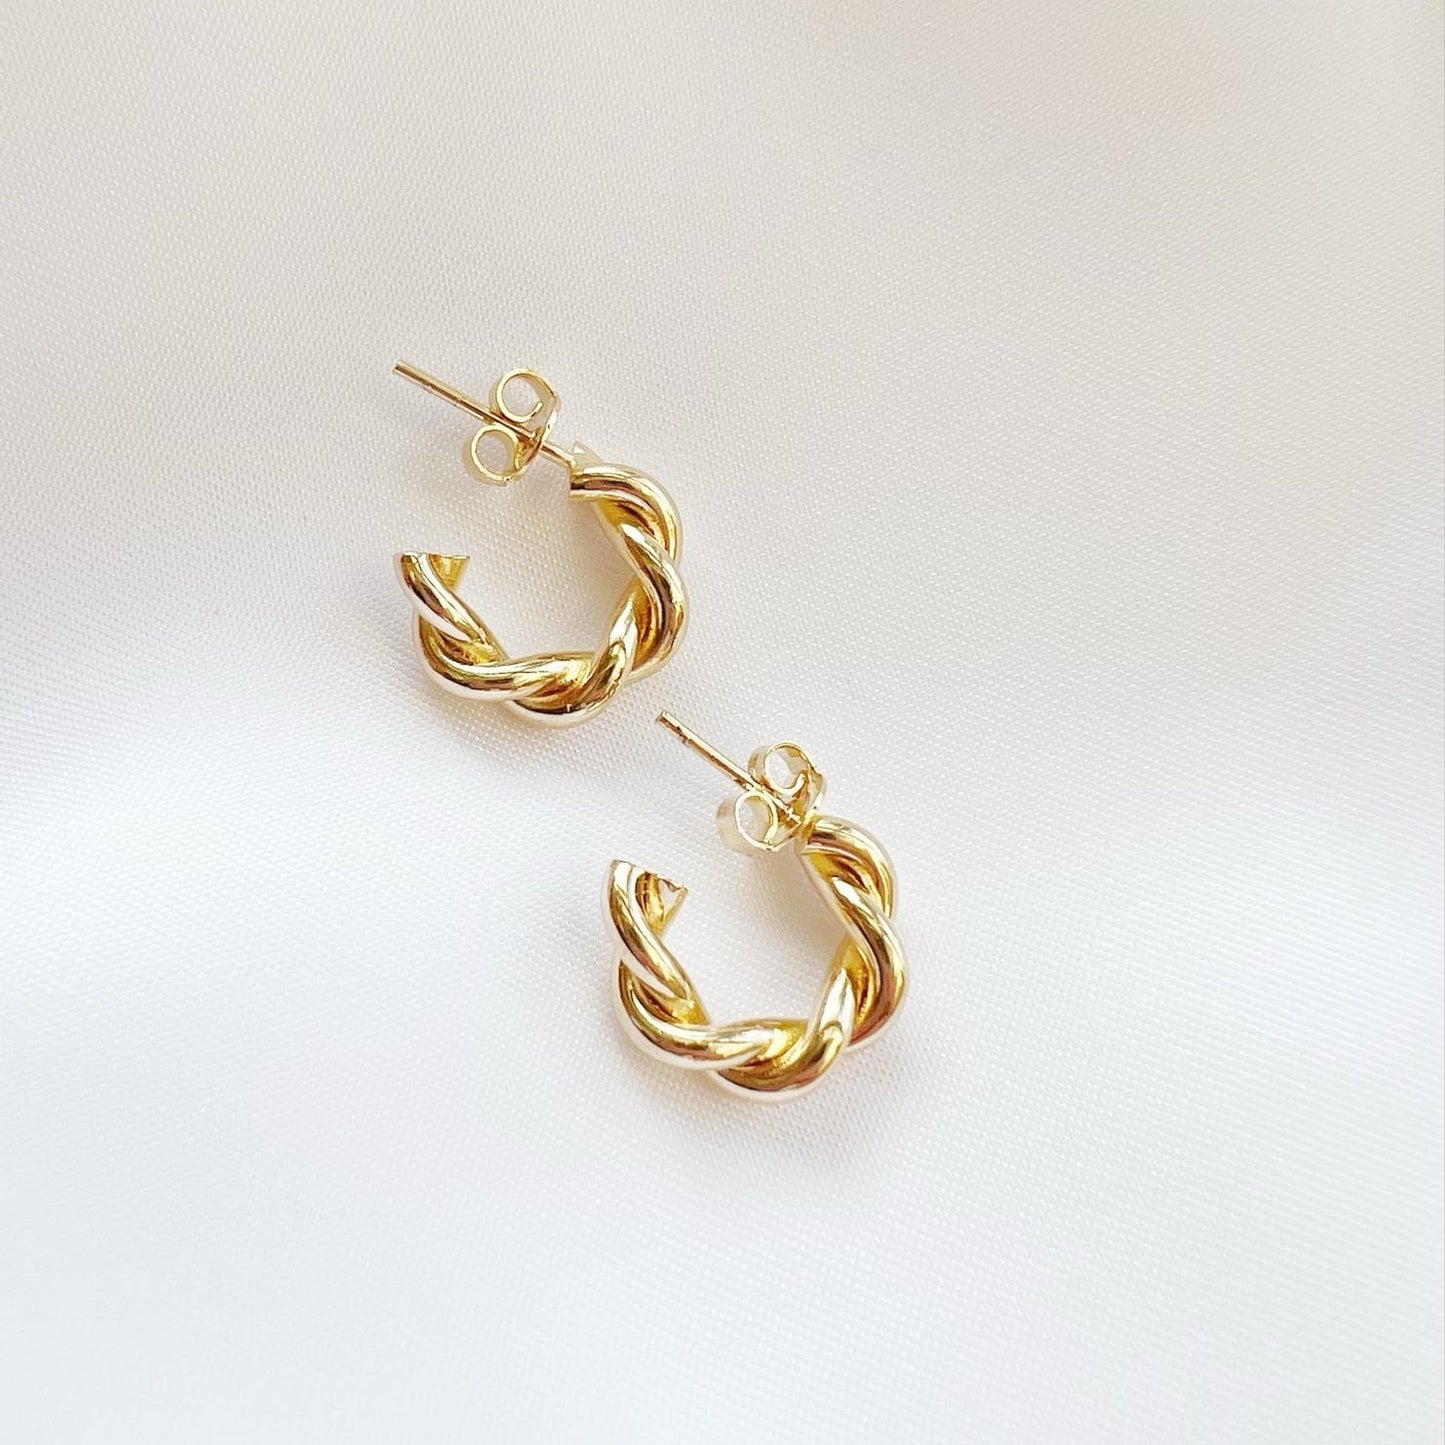 EAR-GF Lily Twist Hoops Earrings Gold Filled